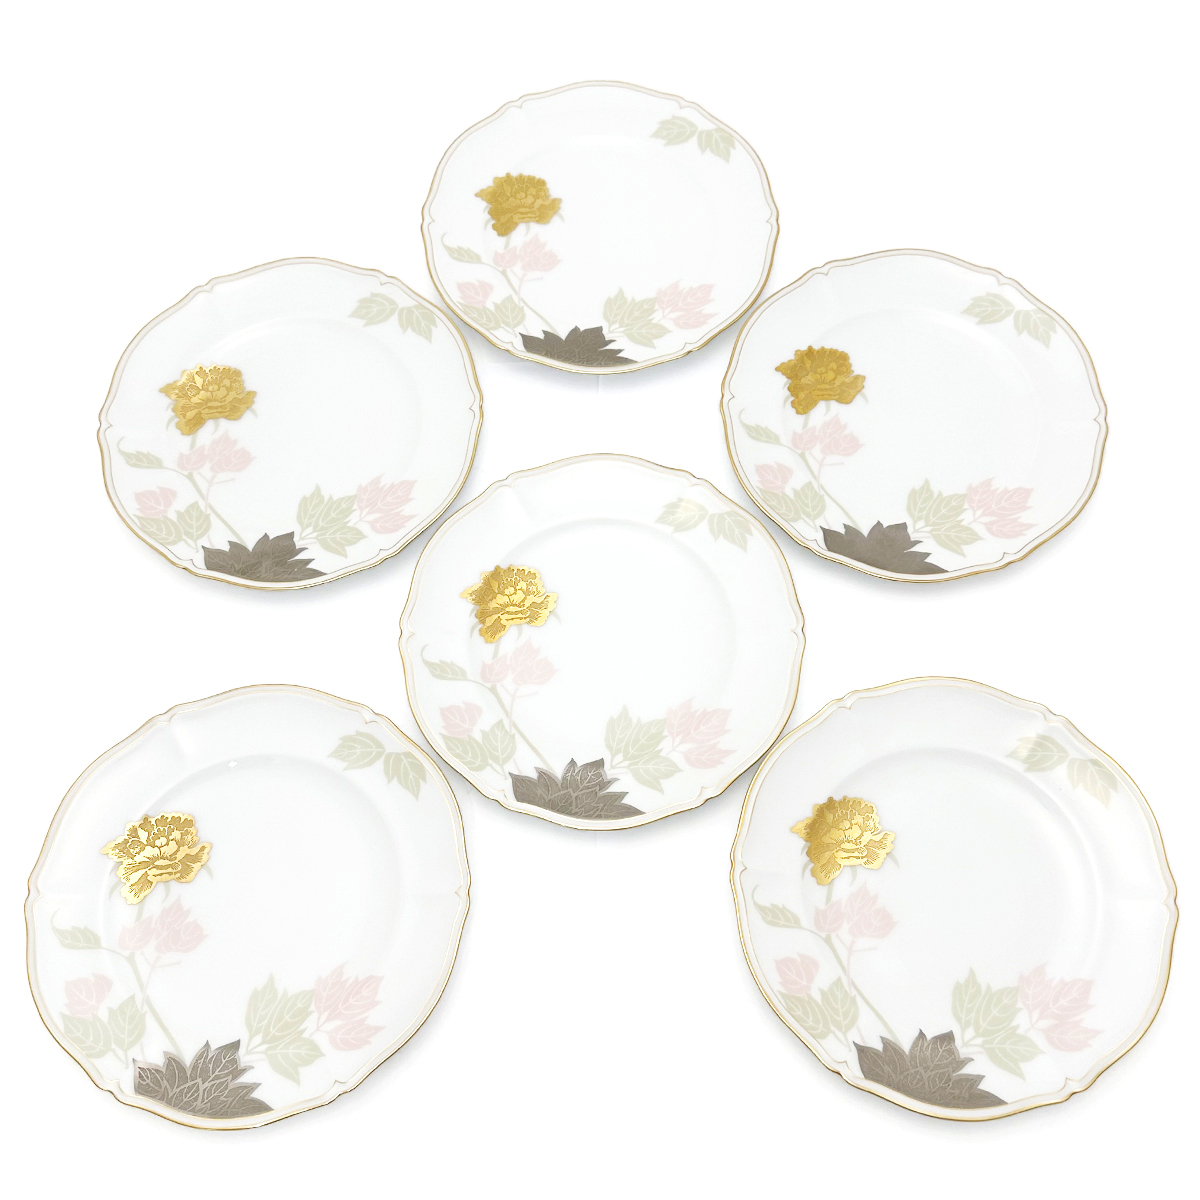 大倉陶園(OKURA) プレート 金銀蝕ボタン 6枚セット ケーキ皿 金彩 銀彩 技法シリーズ